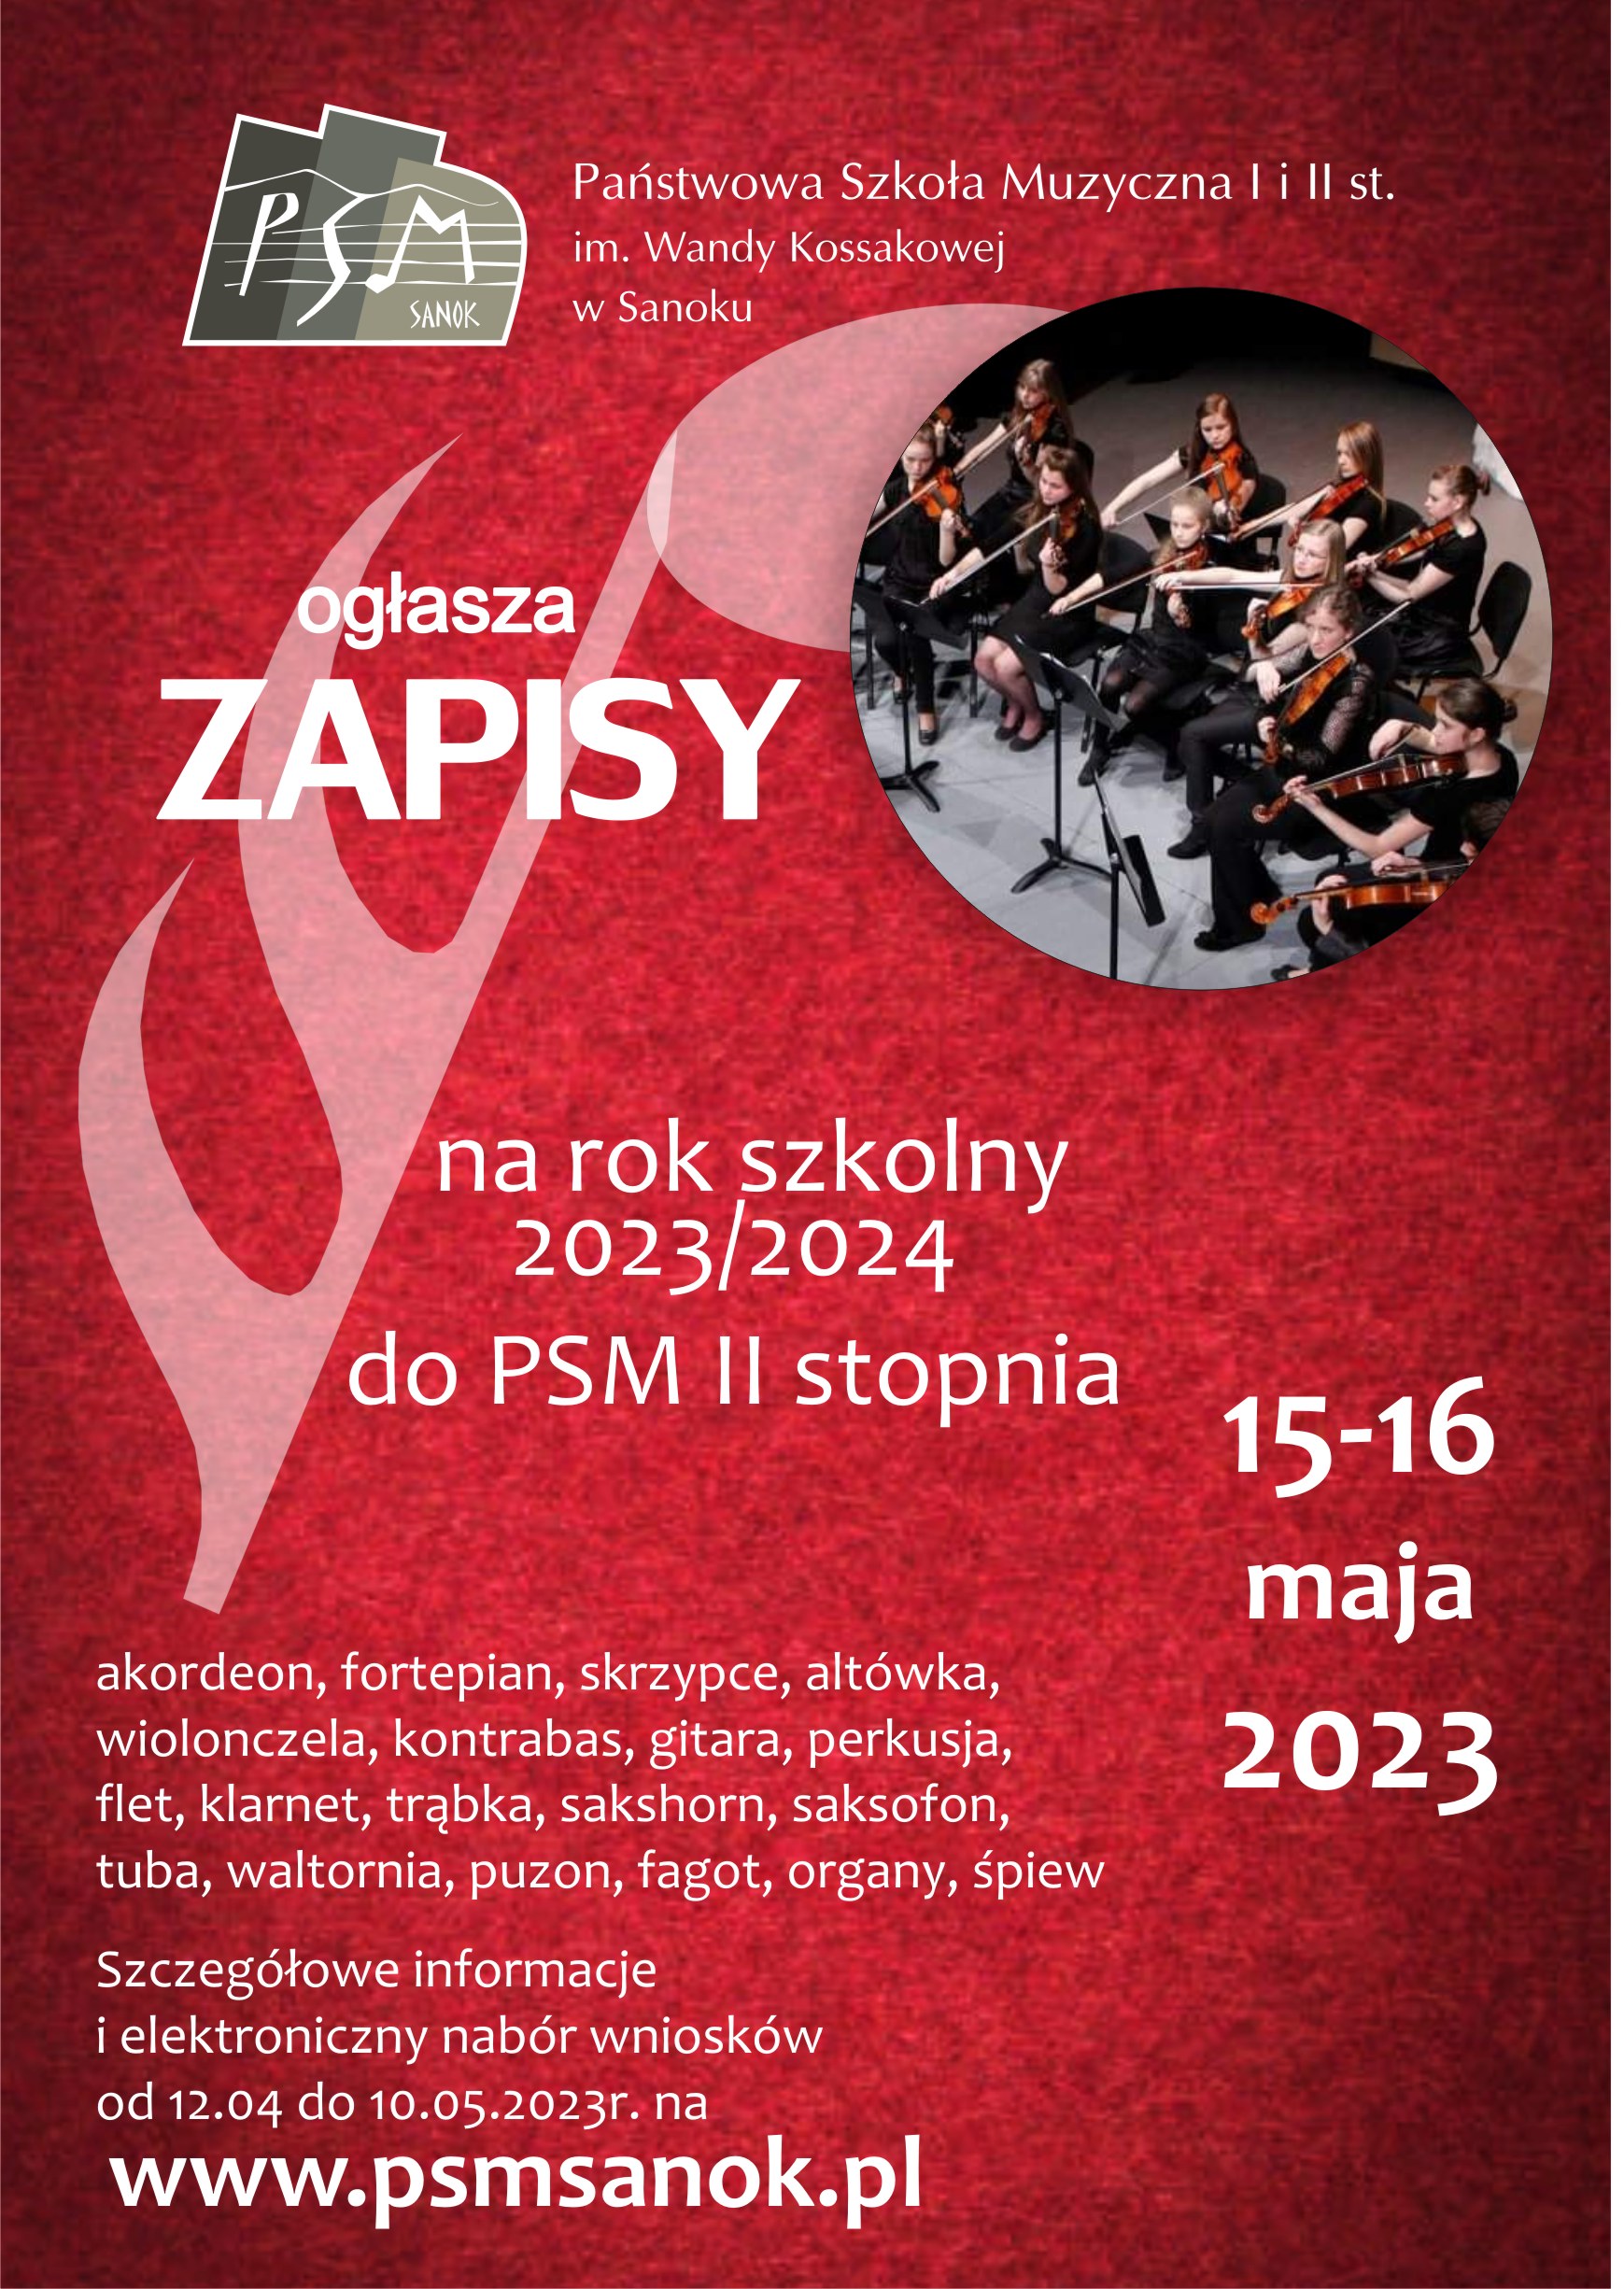  Plakat o zapisach do PSM II st. Czerwone tło ze zdjęciem orkiestry szkolnej, biały tekst o zapisach w dniach 15-16 maja 2023r. strona szkoły www.psmsanok.pl